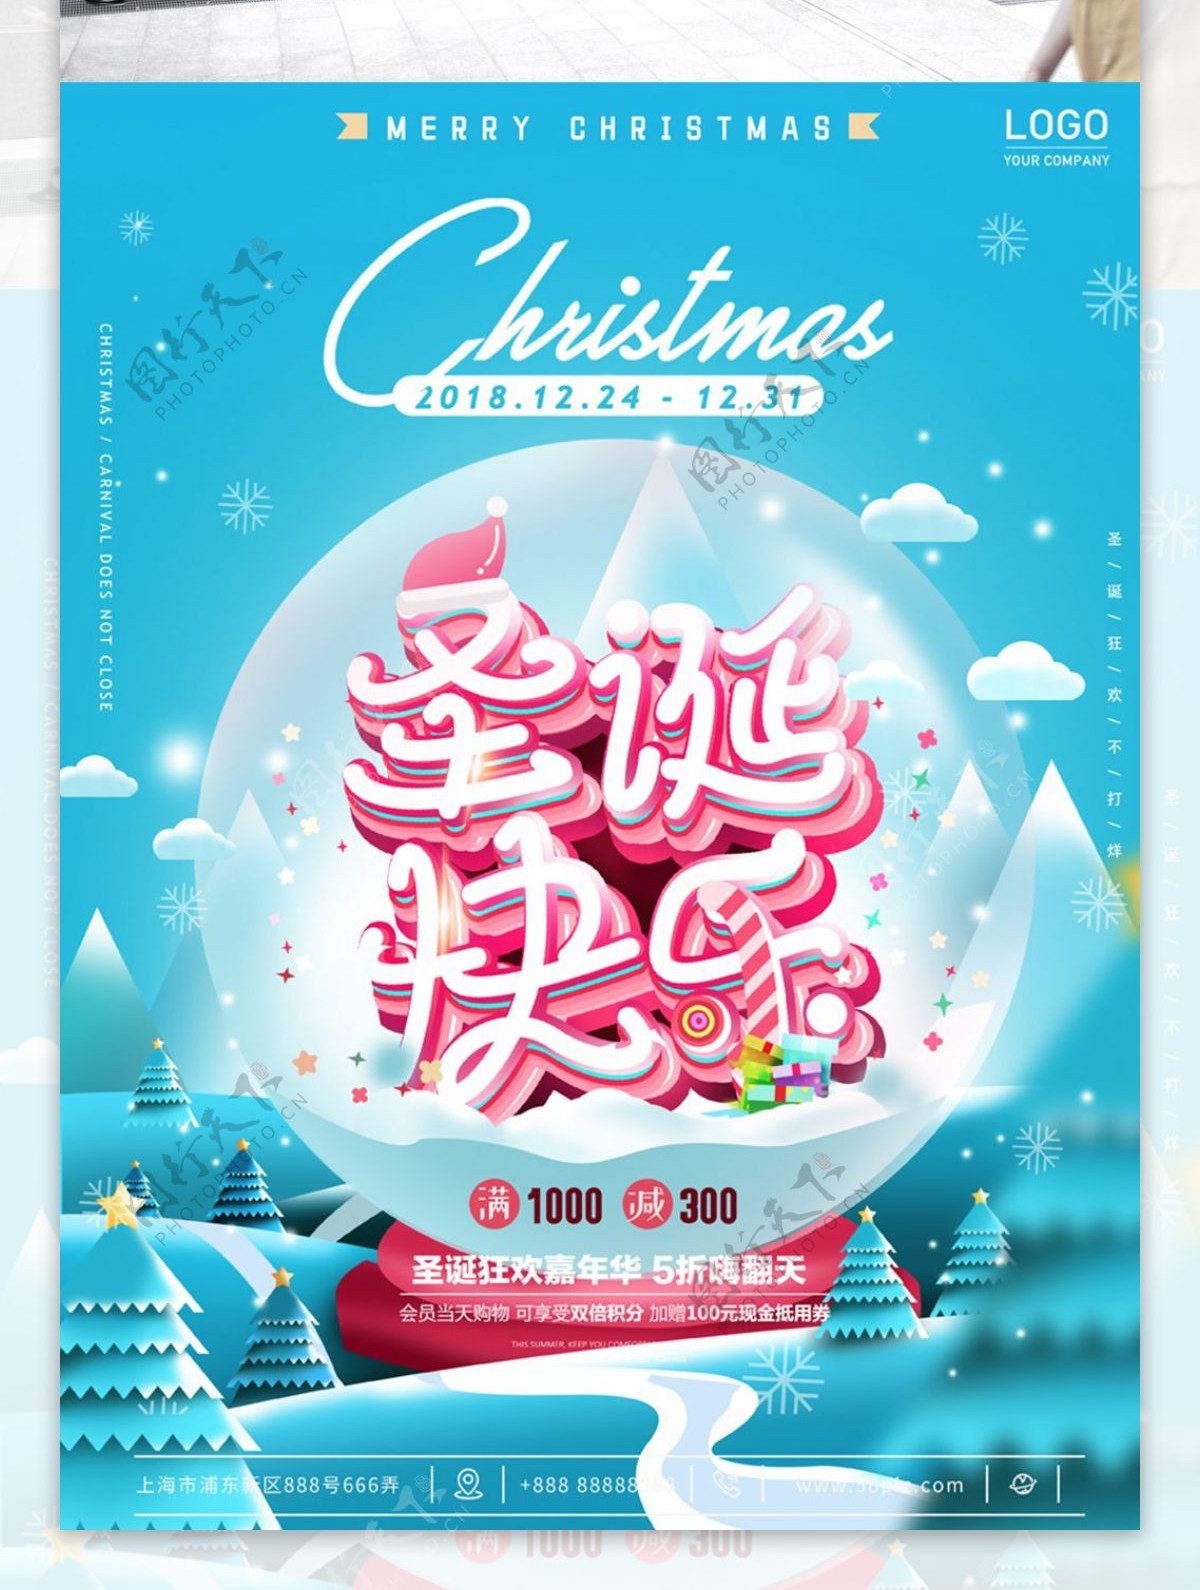 精致梦幻插画圣诞快乐圣诞节商场促销海报